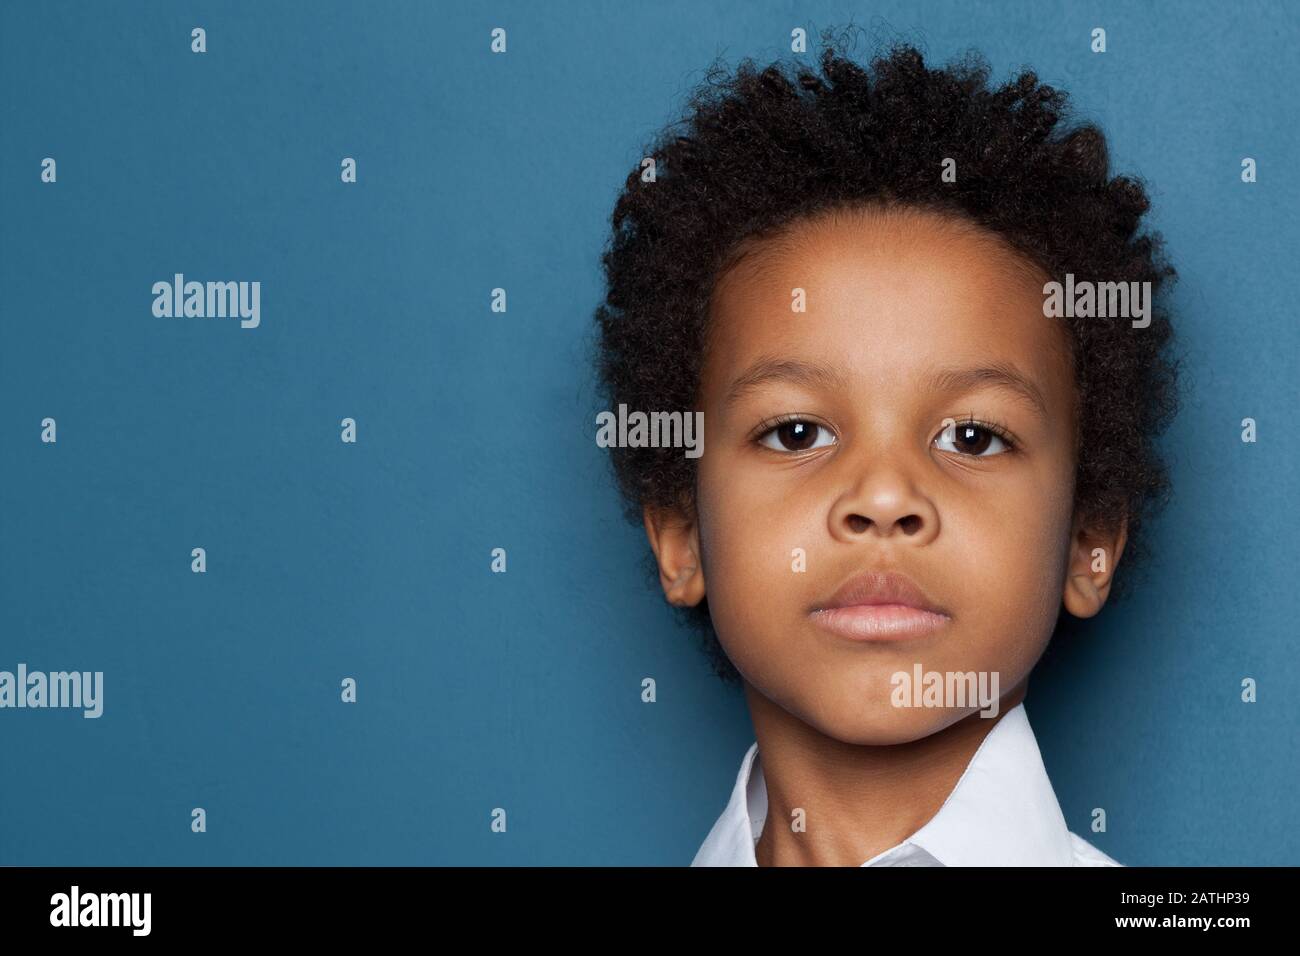 Smart serious black kid boy face close up portrait Stock Photo